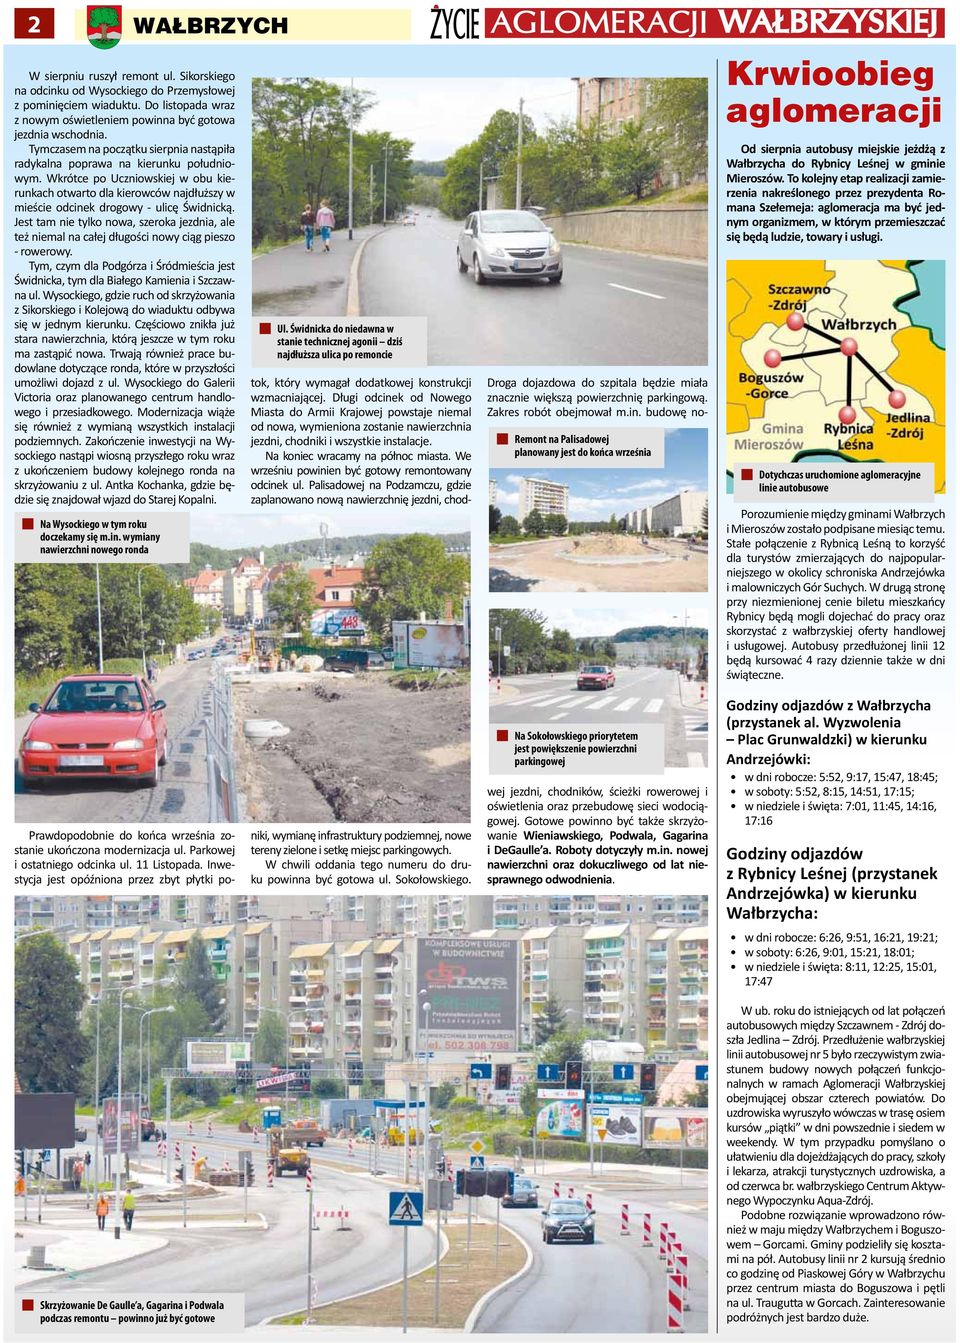 Wkrótce po Uczniowskiej w obu kierunkach otwarto dla kierowców najdłuższy w mieście odcinek drogowy - ulicę Świdnicką.